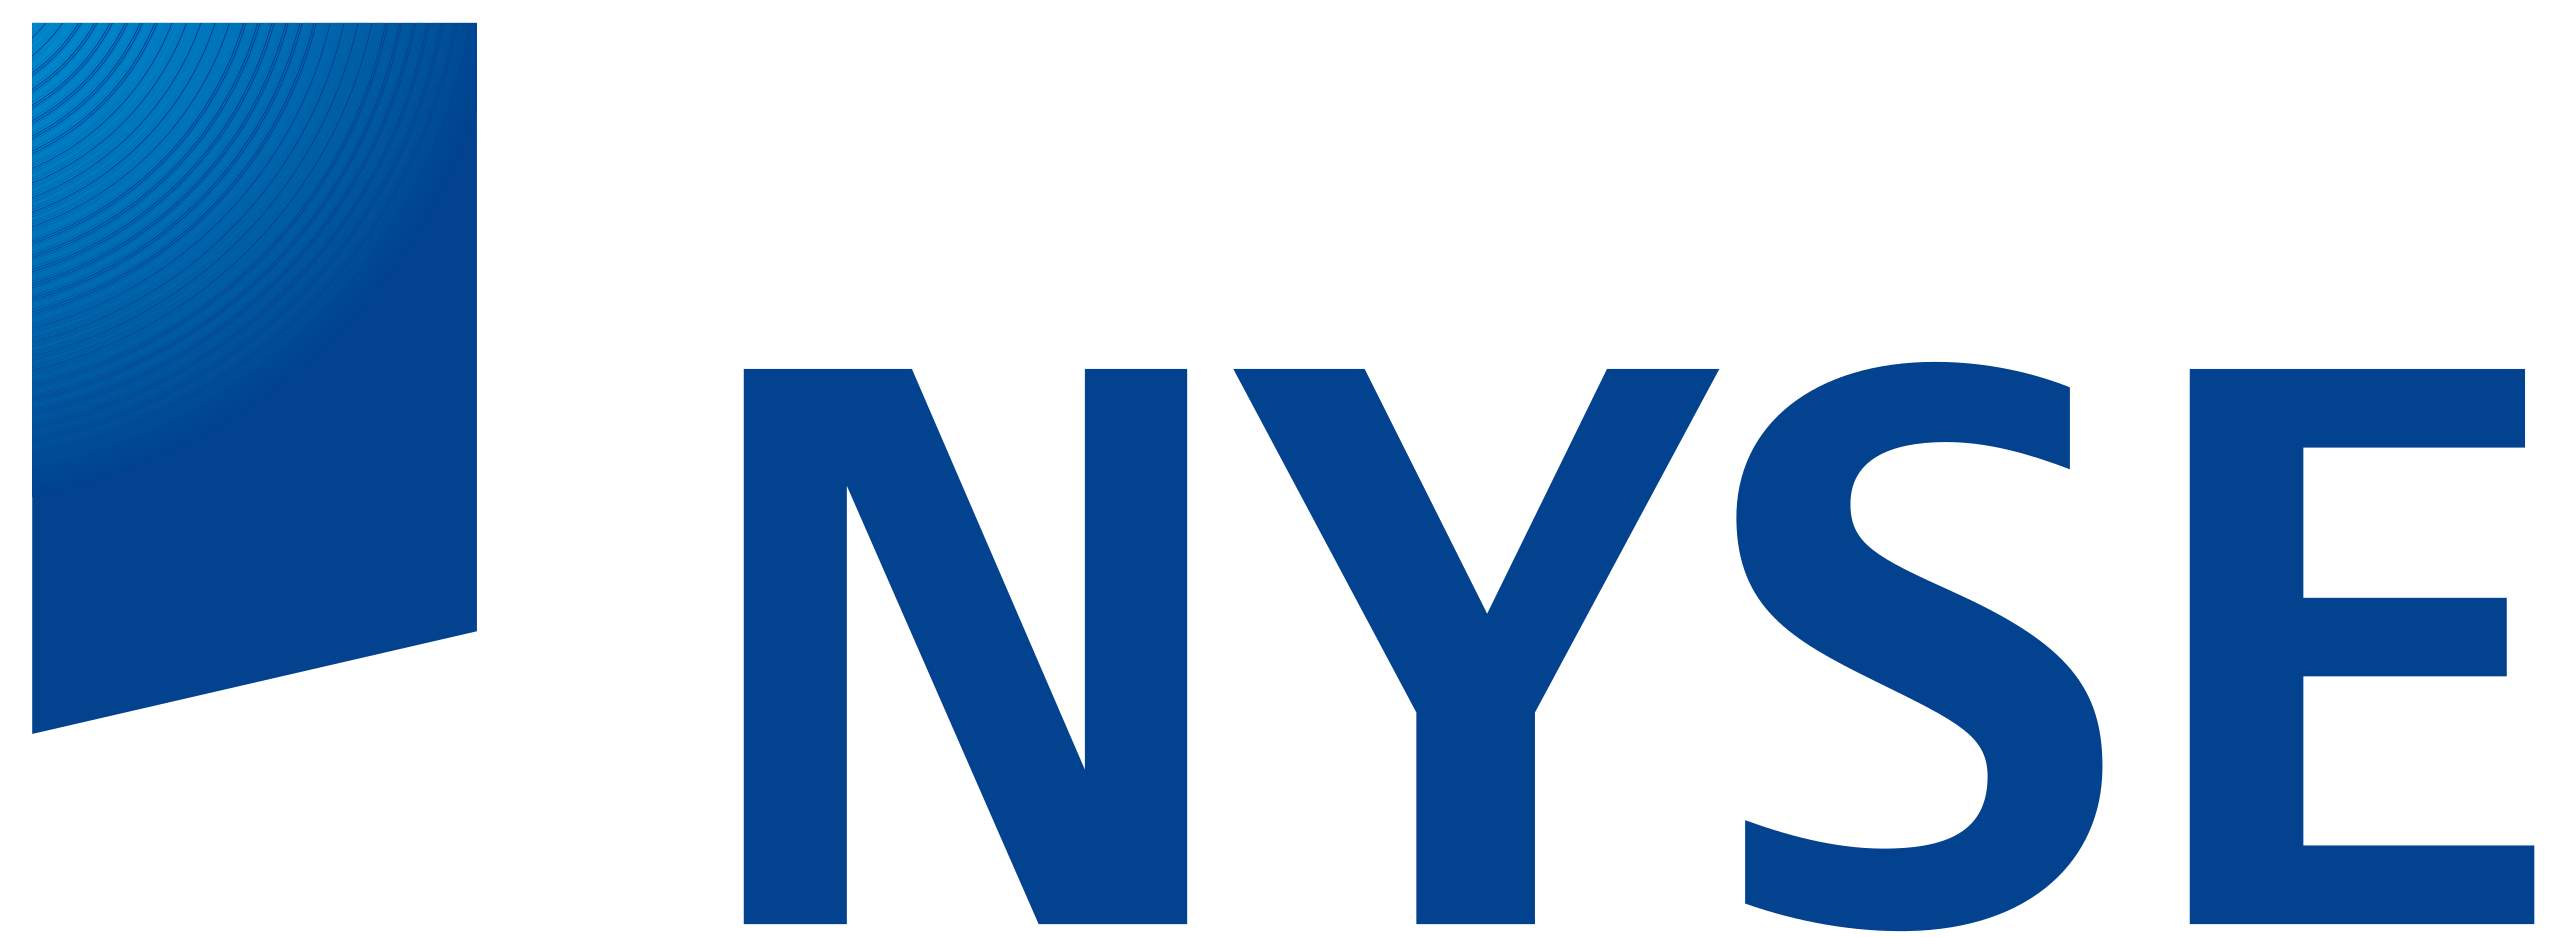 2560px-NYSE_logo.svg